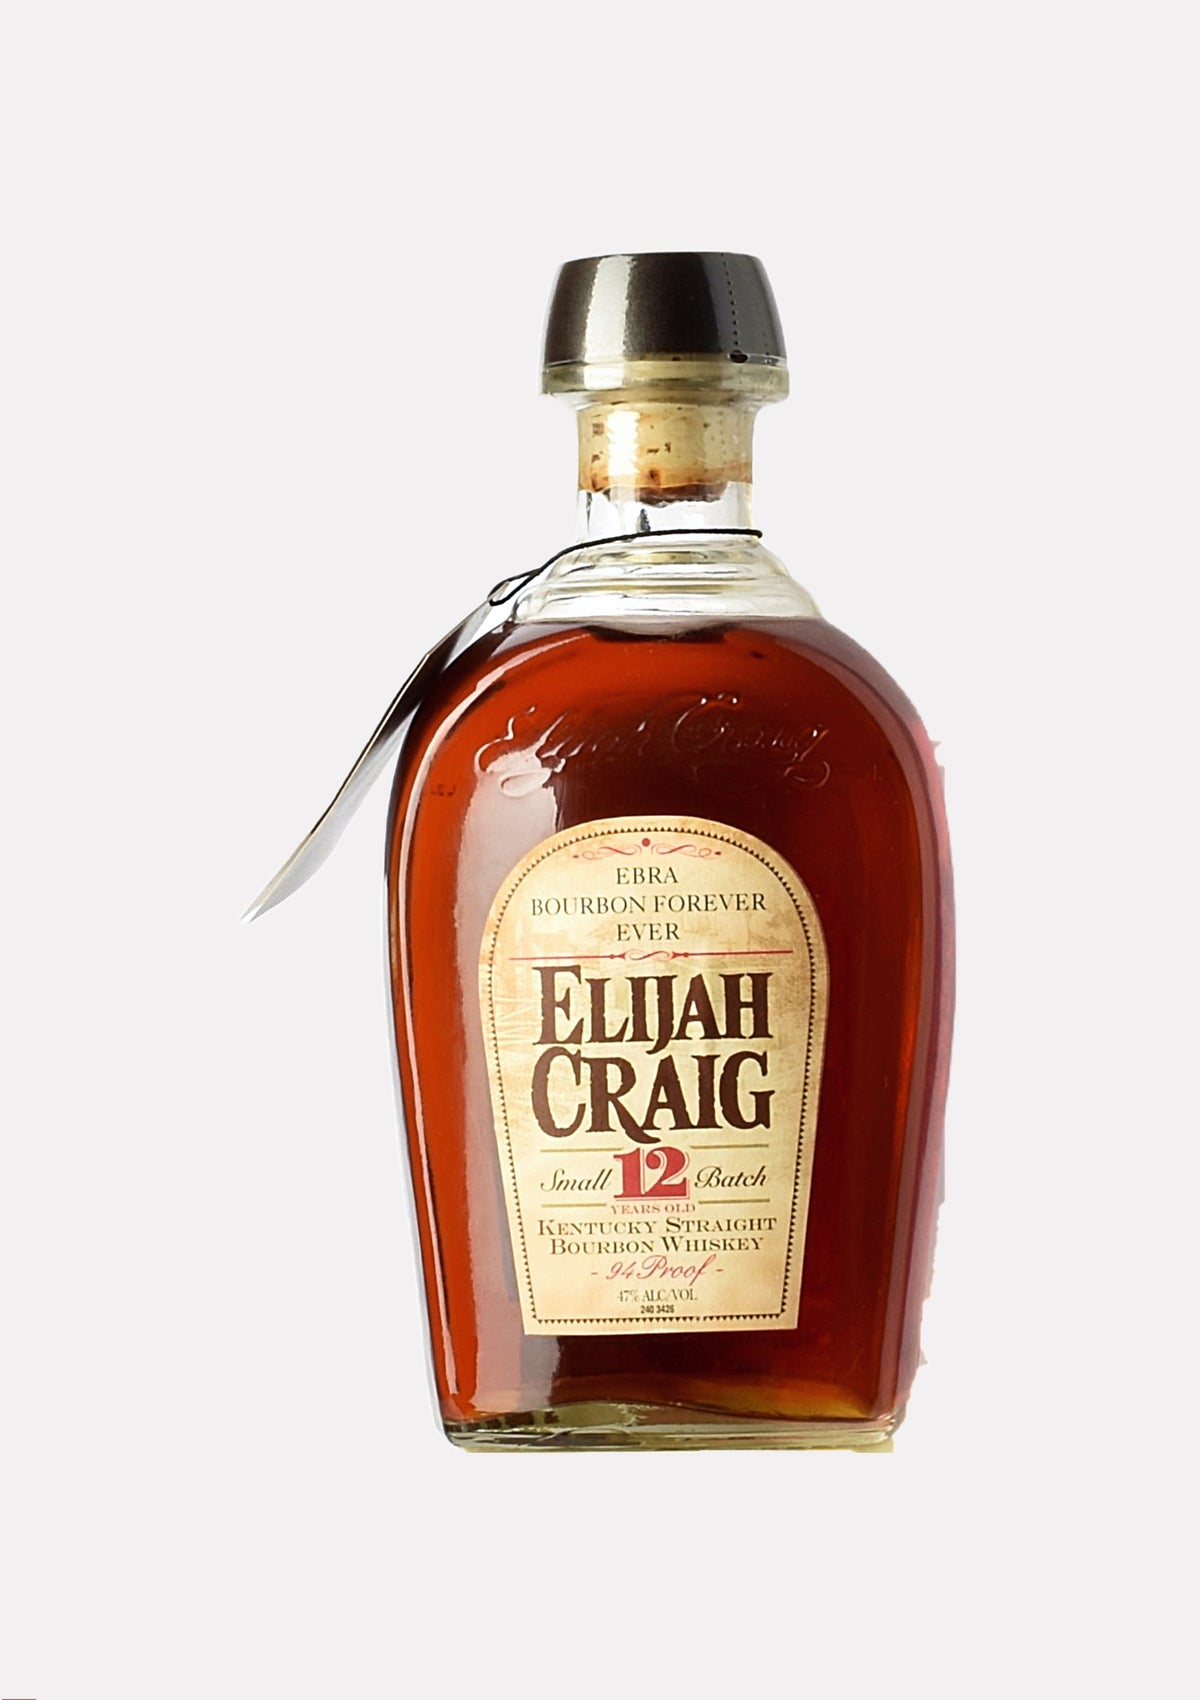 Elijah Craig Small Batch 12 Jahre EBRA Bourbon Forever Ever